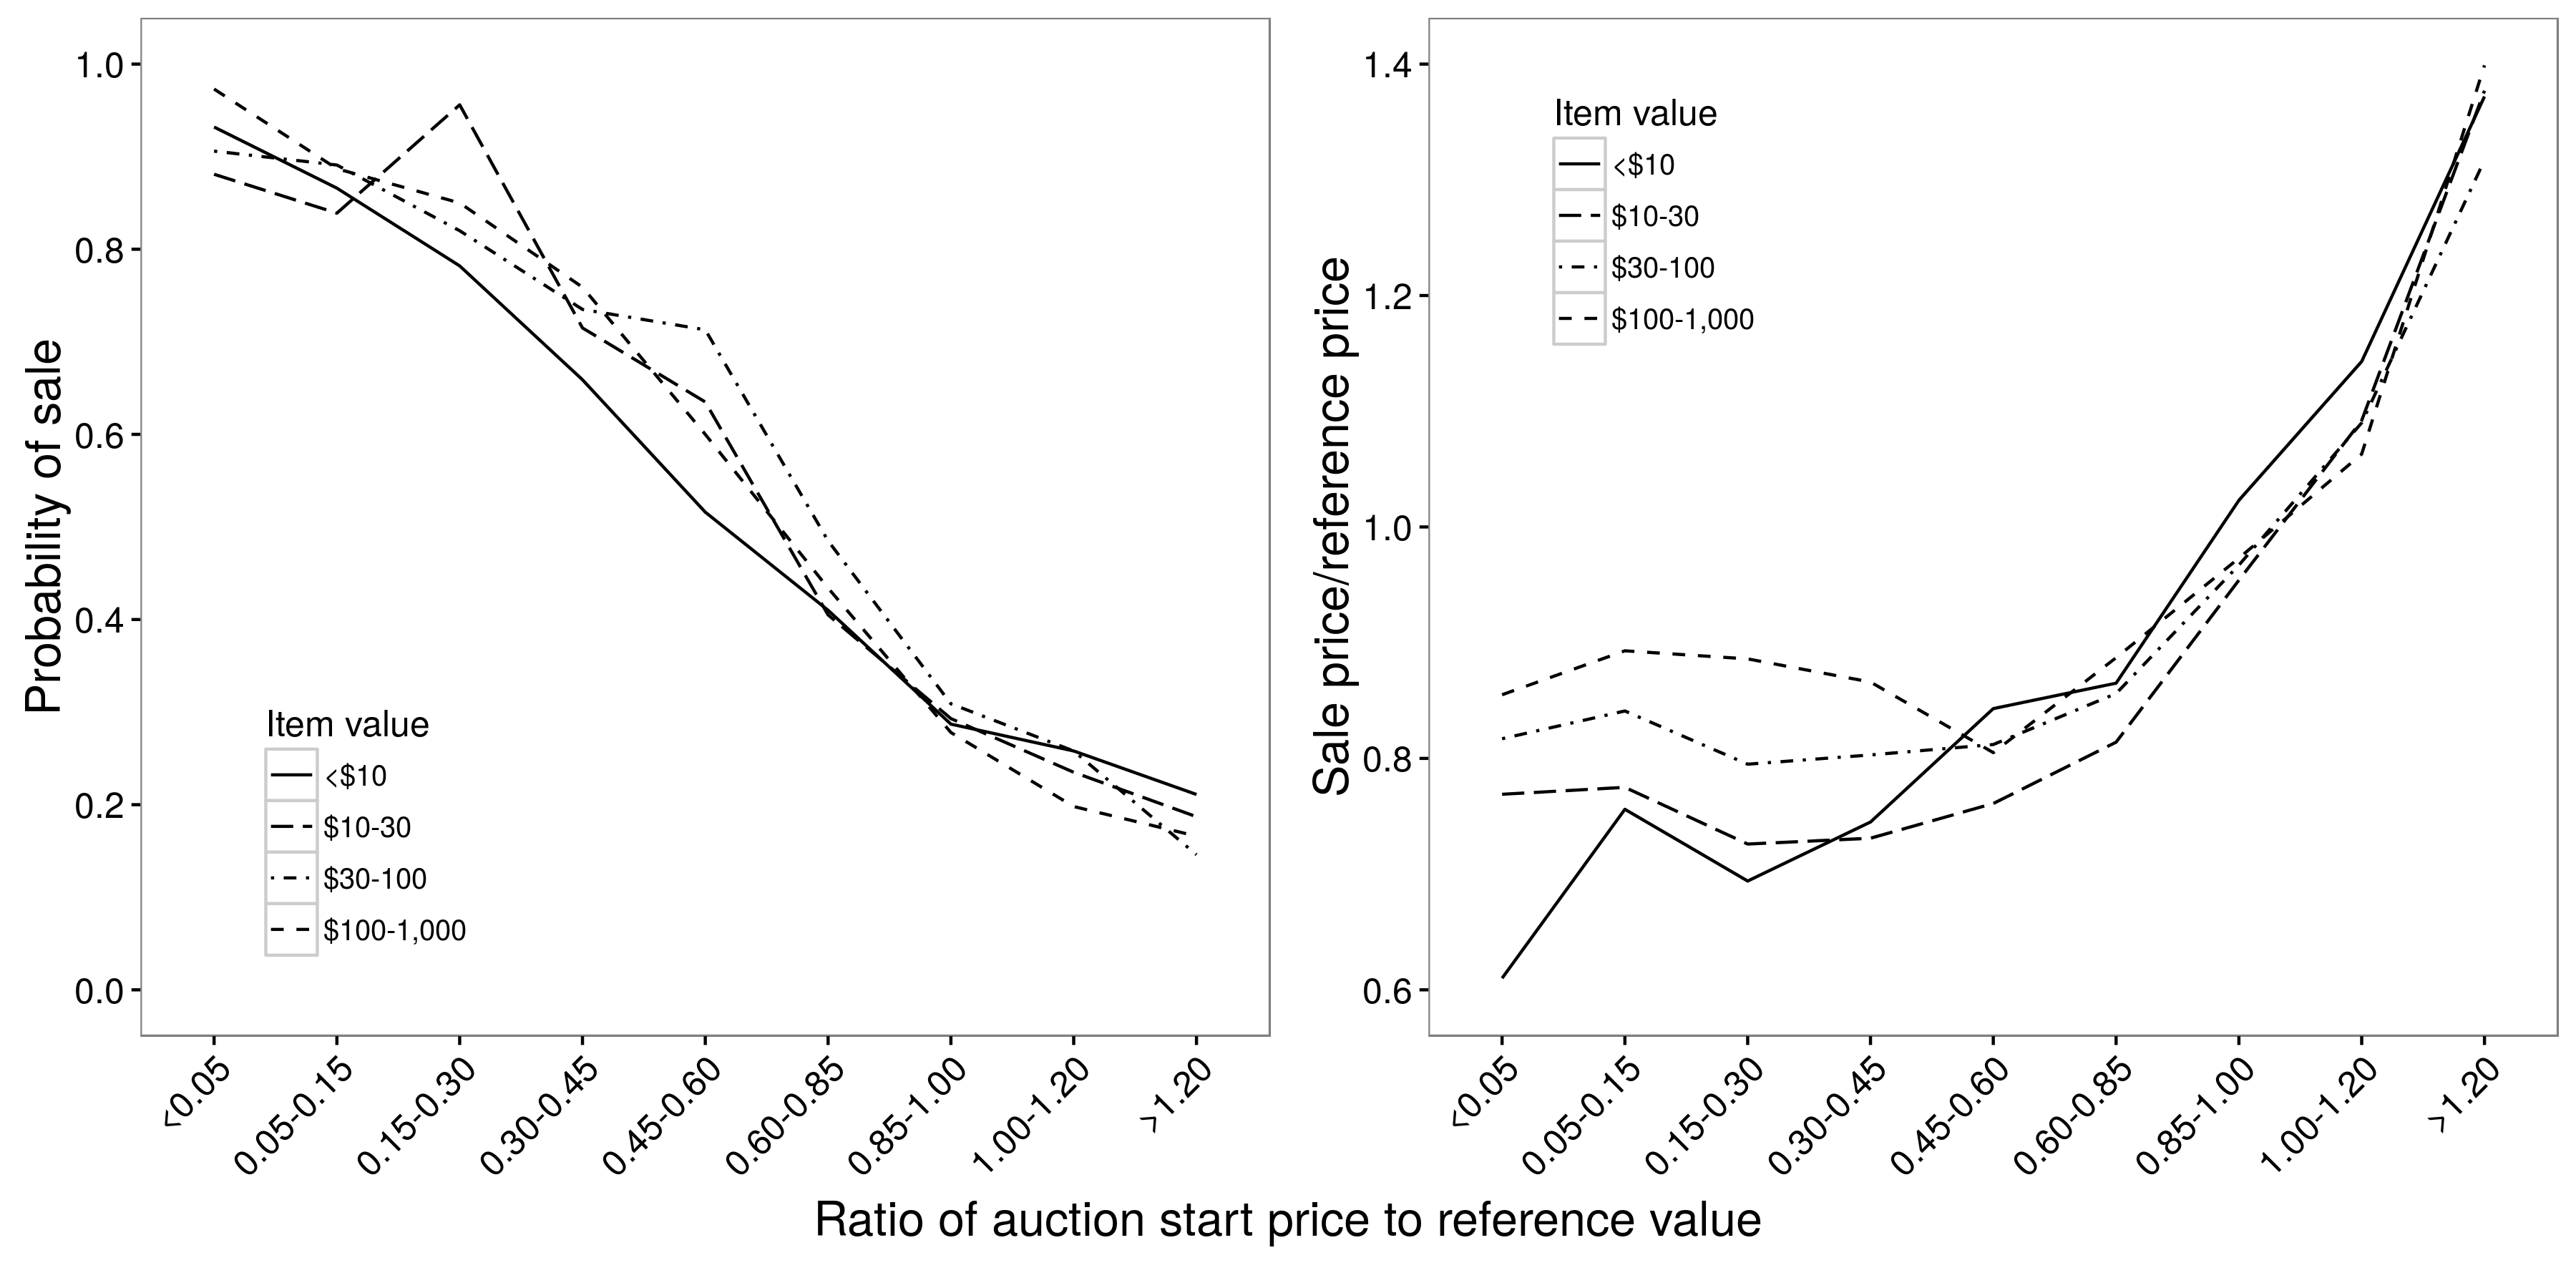 Slika 2.9: Razmerje med začetno ceno dražbe in verjetnostjo prodaje (a) in prodajno ceno (b). Obstaja približno linearna povezava med začetno ceno in verjetnostjo prodaje, vendar je nelinearna povezava med začetno in prodajno ceno; za začetne cene med 0,05 in 0,85, začetna cena zelo malo vpliva na prodajno ceno. V obeh primerih so odnosi v osnovi neodvisni od vrednosti postavke. Prilagojeno od Einav et al. (2015), slike 4a in 4b.